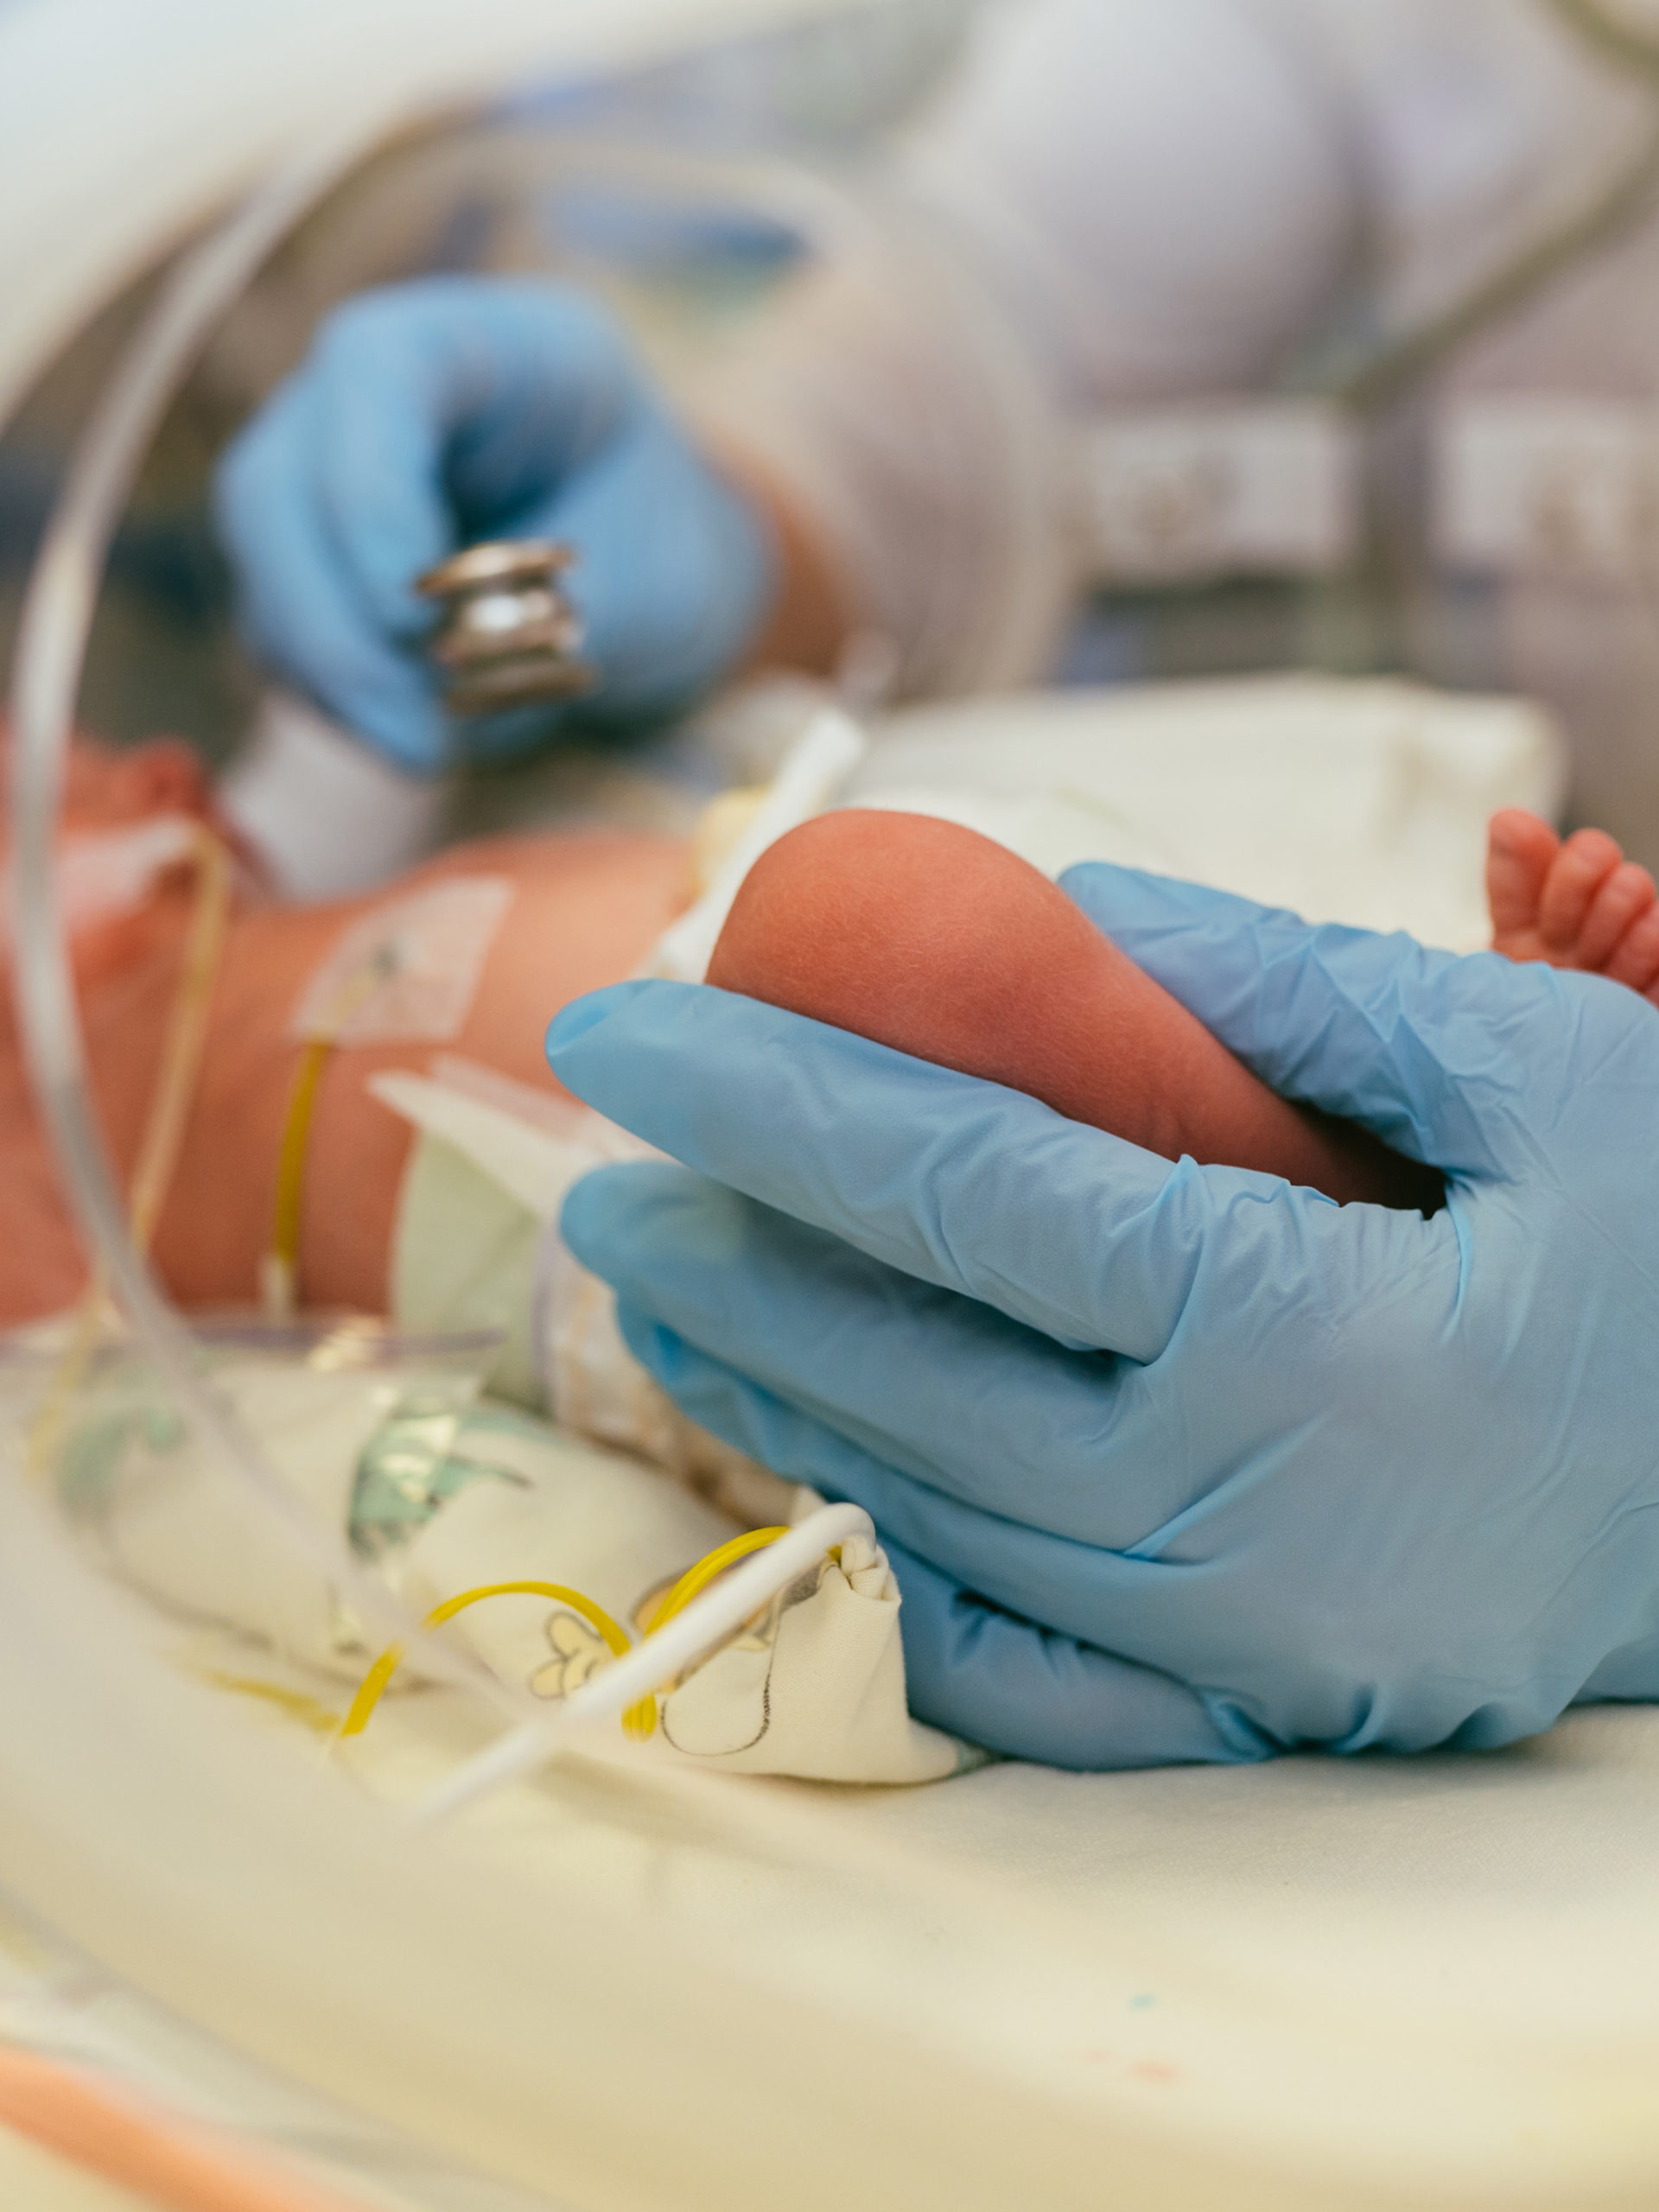 newborn baby in intensive care unit in a medical incubator